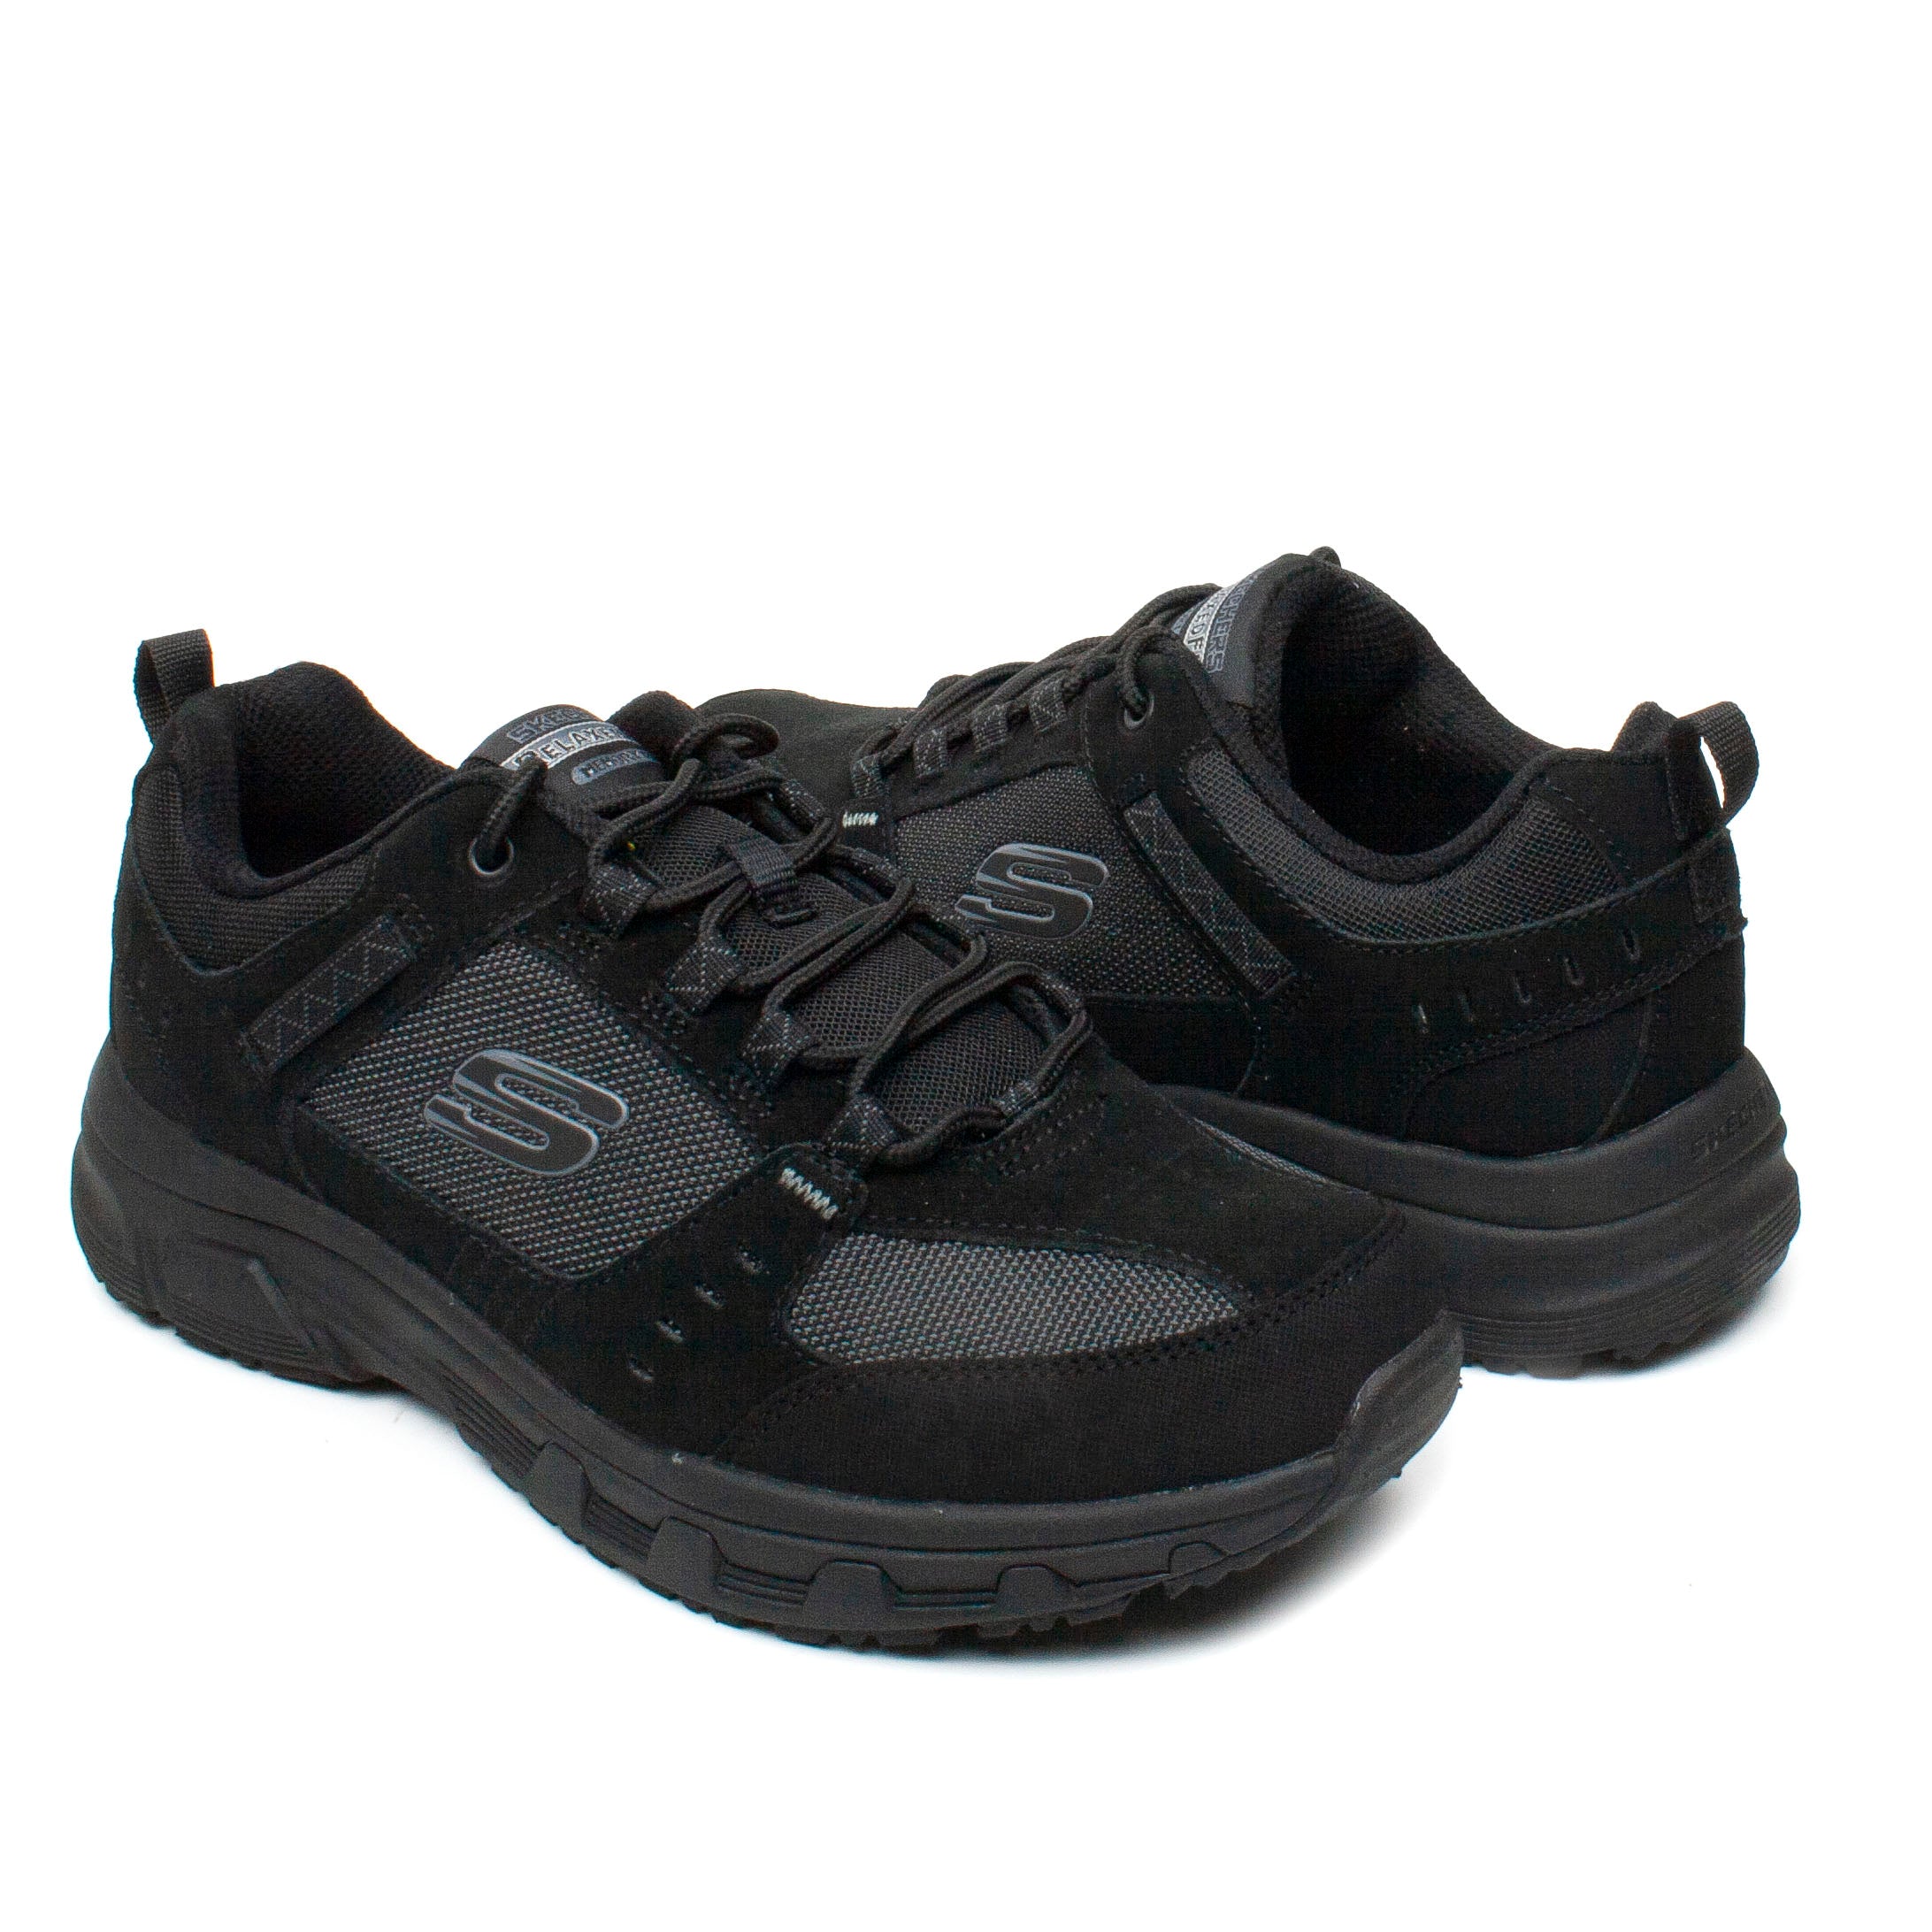 Skechers Pantofi barbati sport 51893 negru IB0579-NG